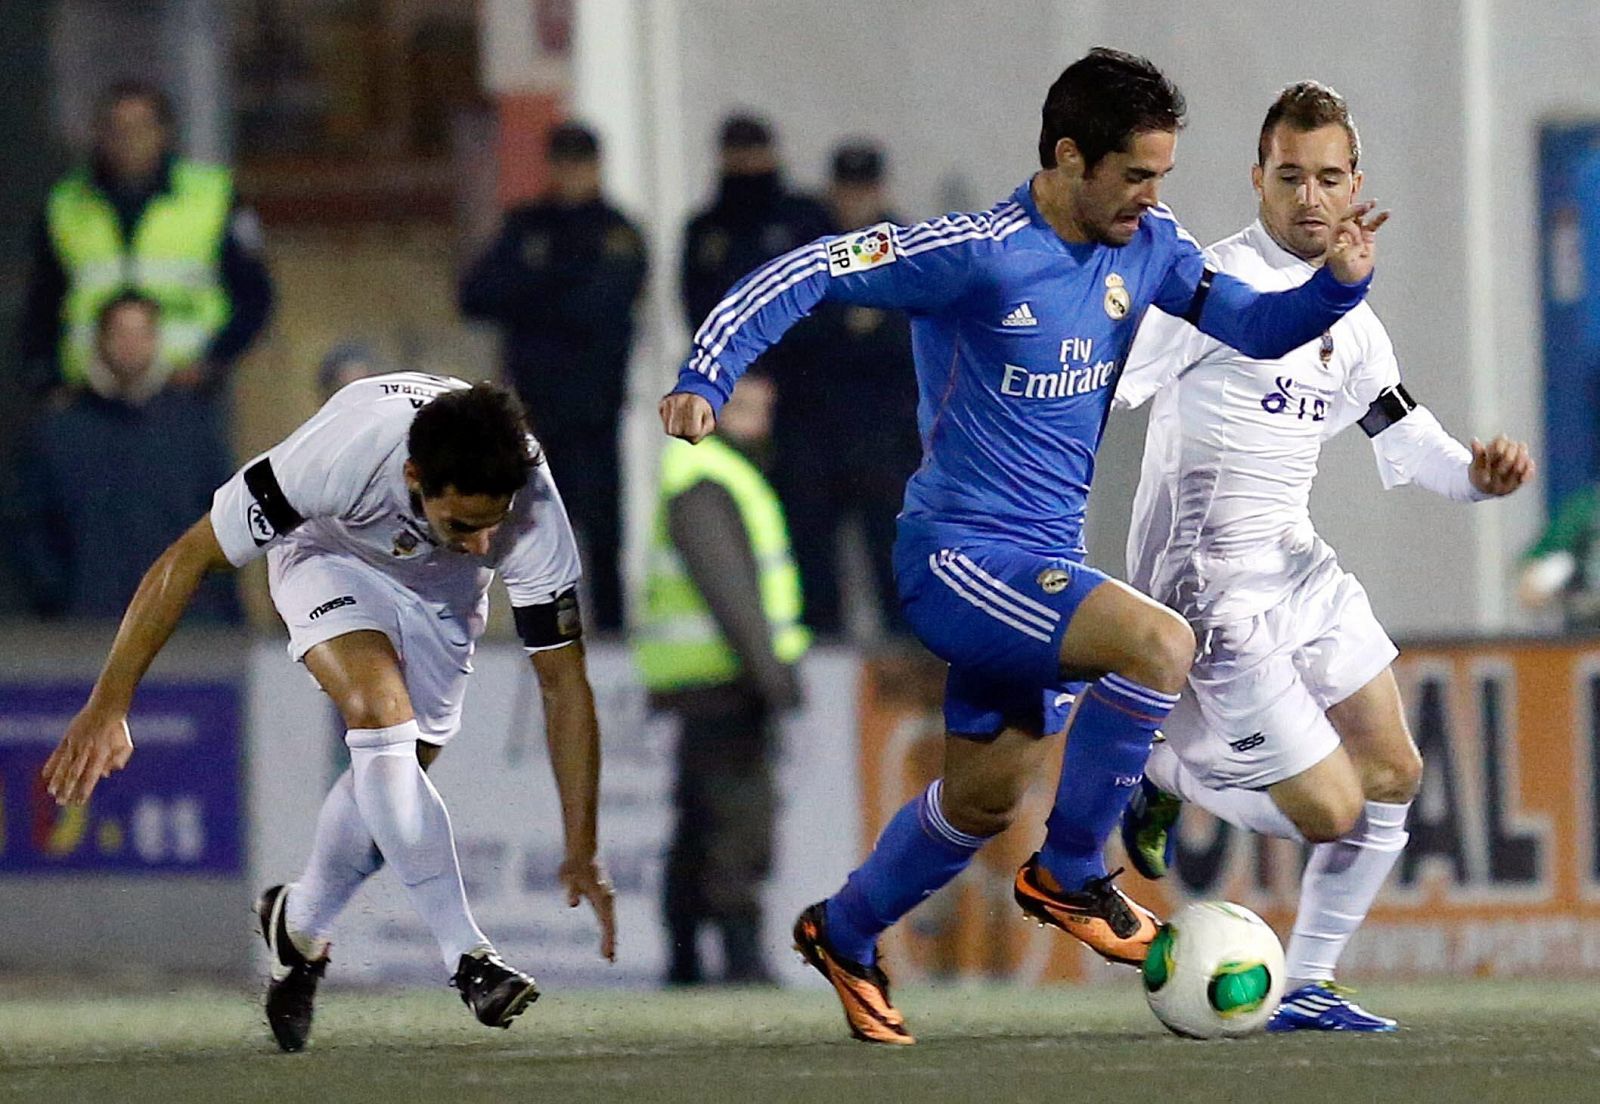 El centrocampista del Real Madrid, Francisco Alarcón "Isco" (c), conduce el balón ante los jugadores del Olimpic de Xátiva